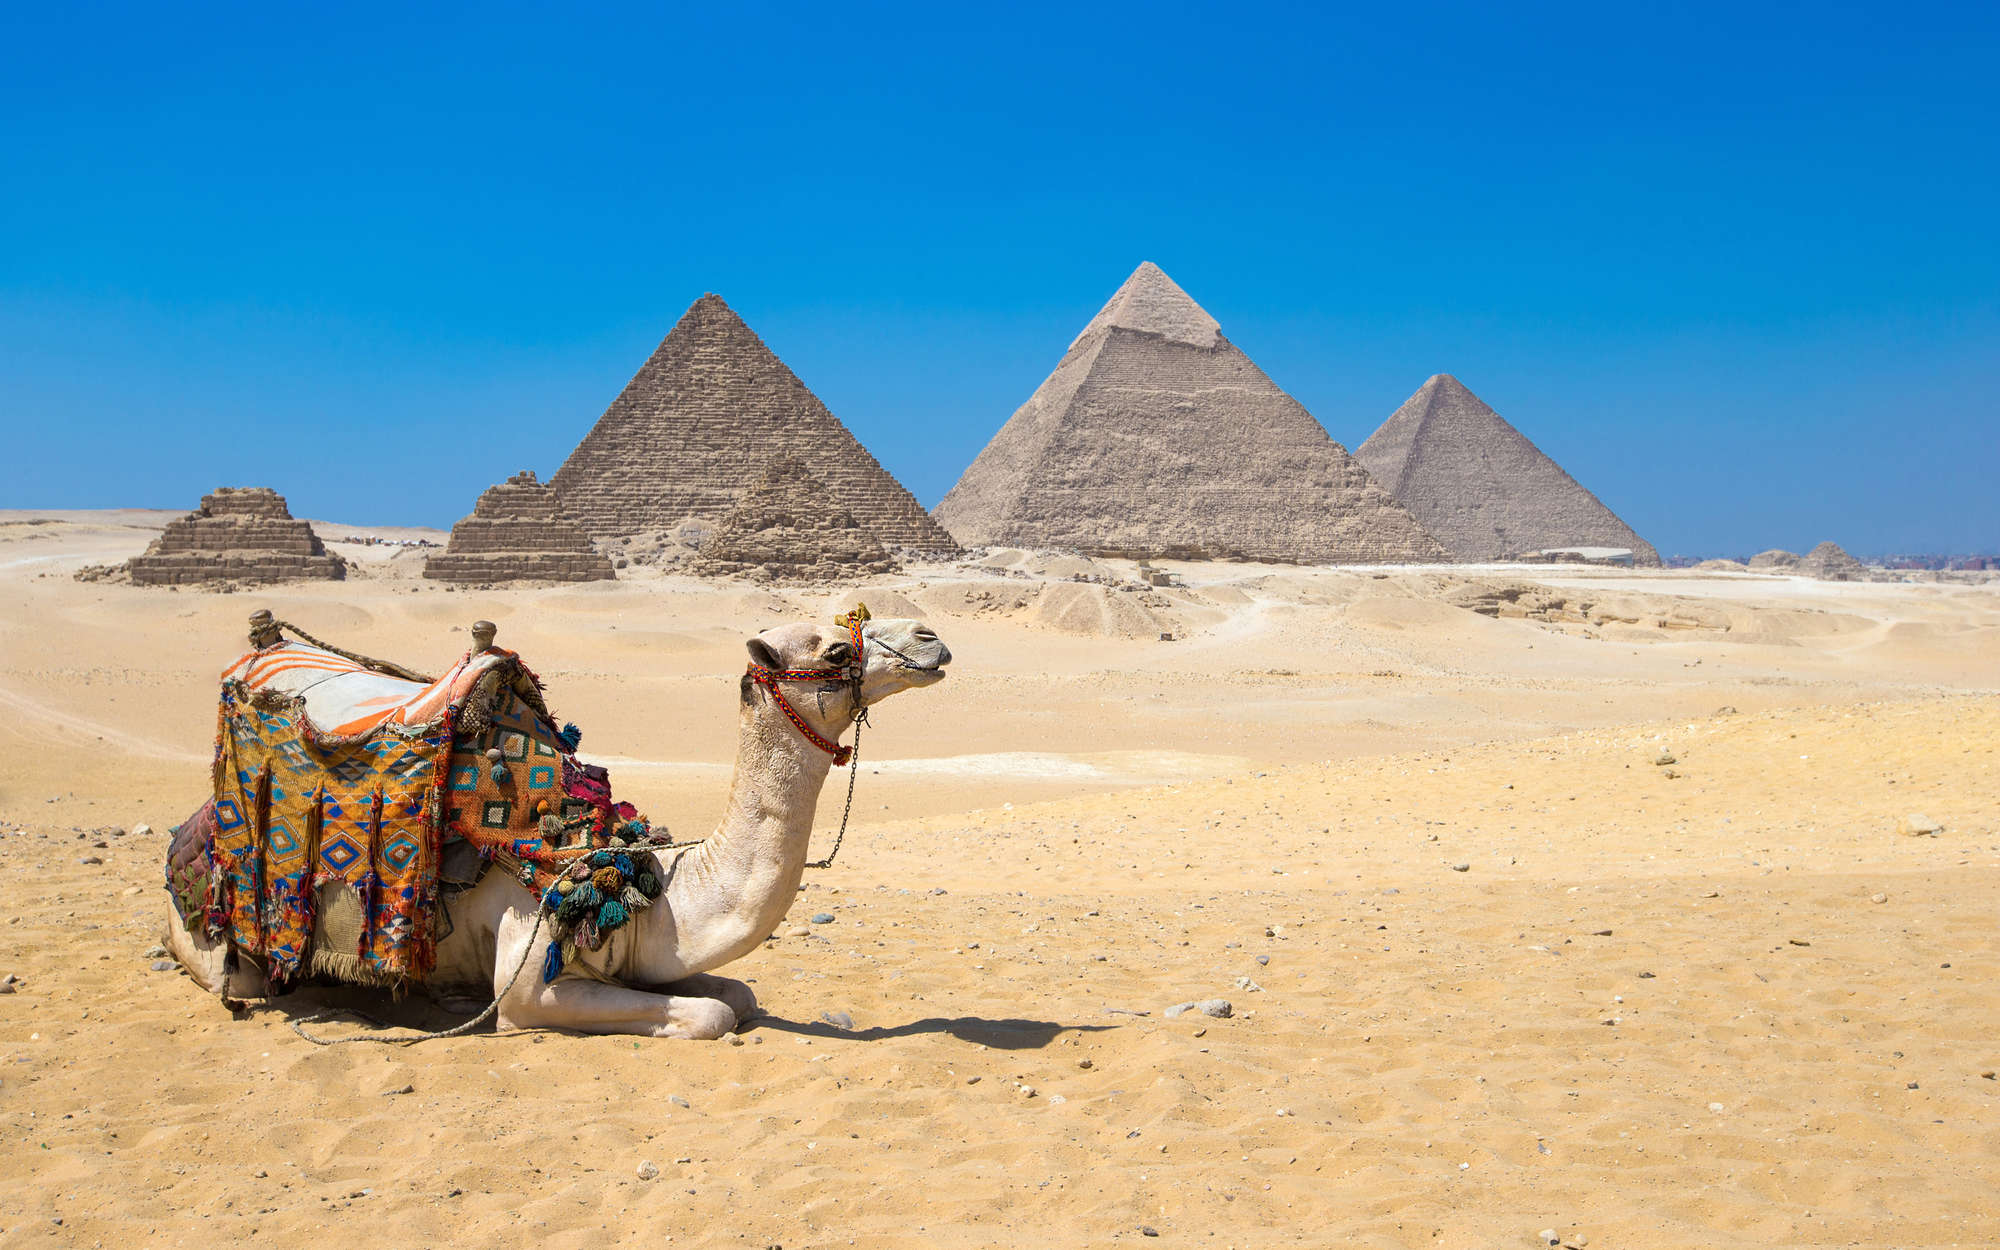             Piramides van Gizeh met Camel behang - structuurvlies
        